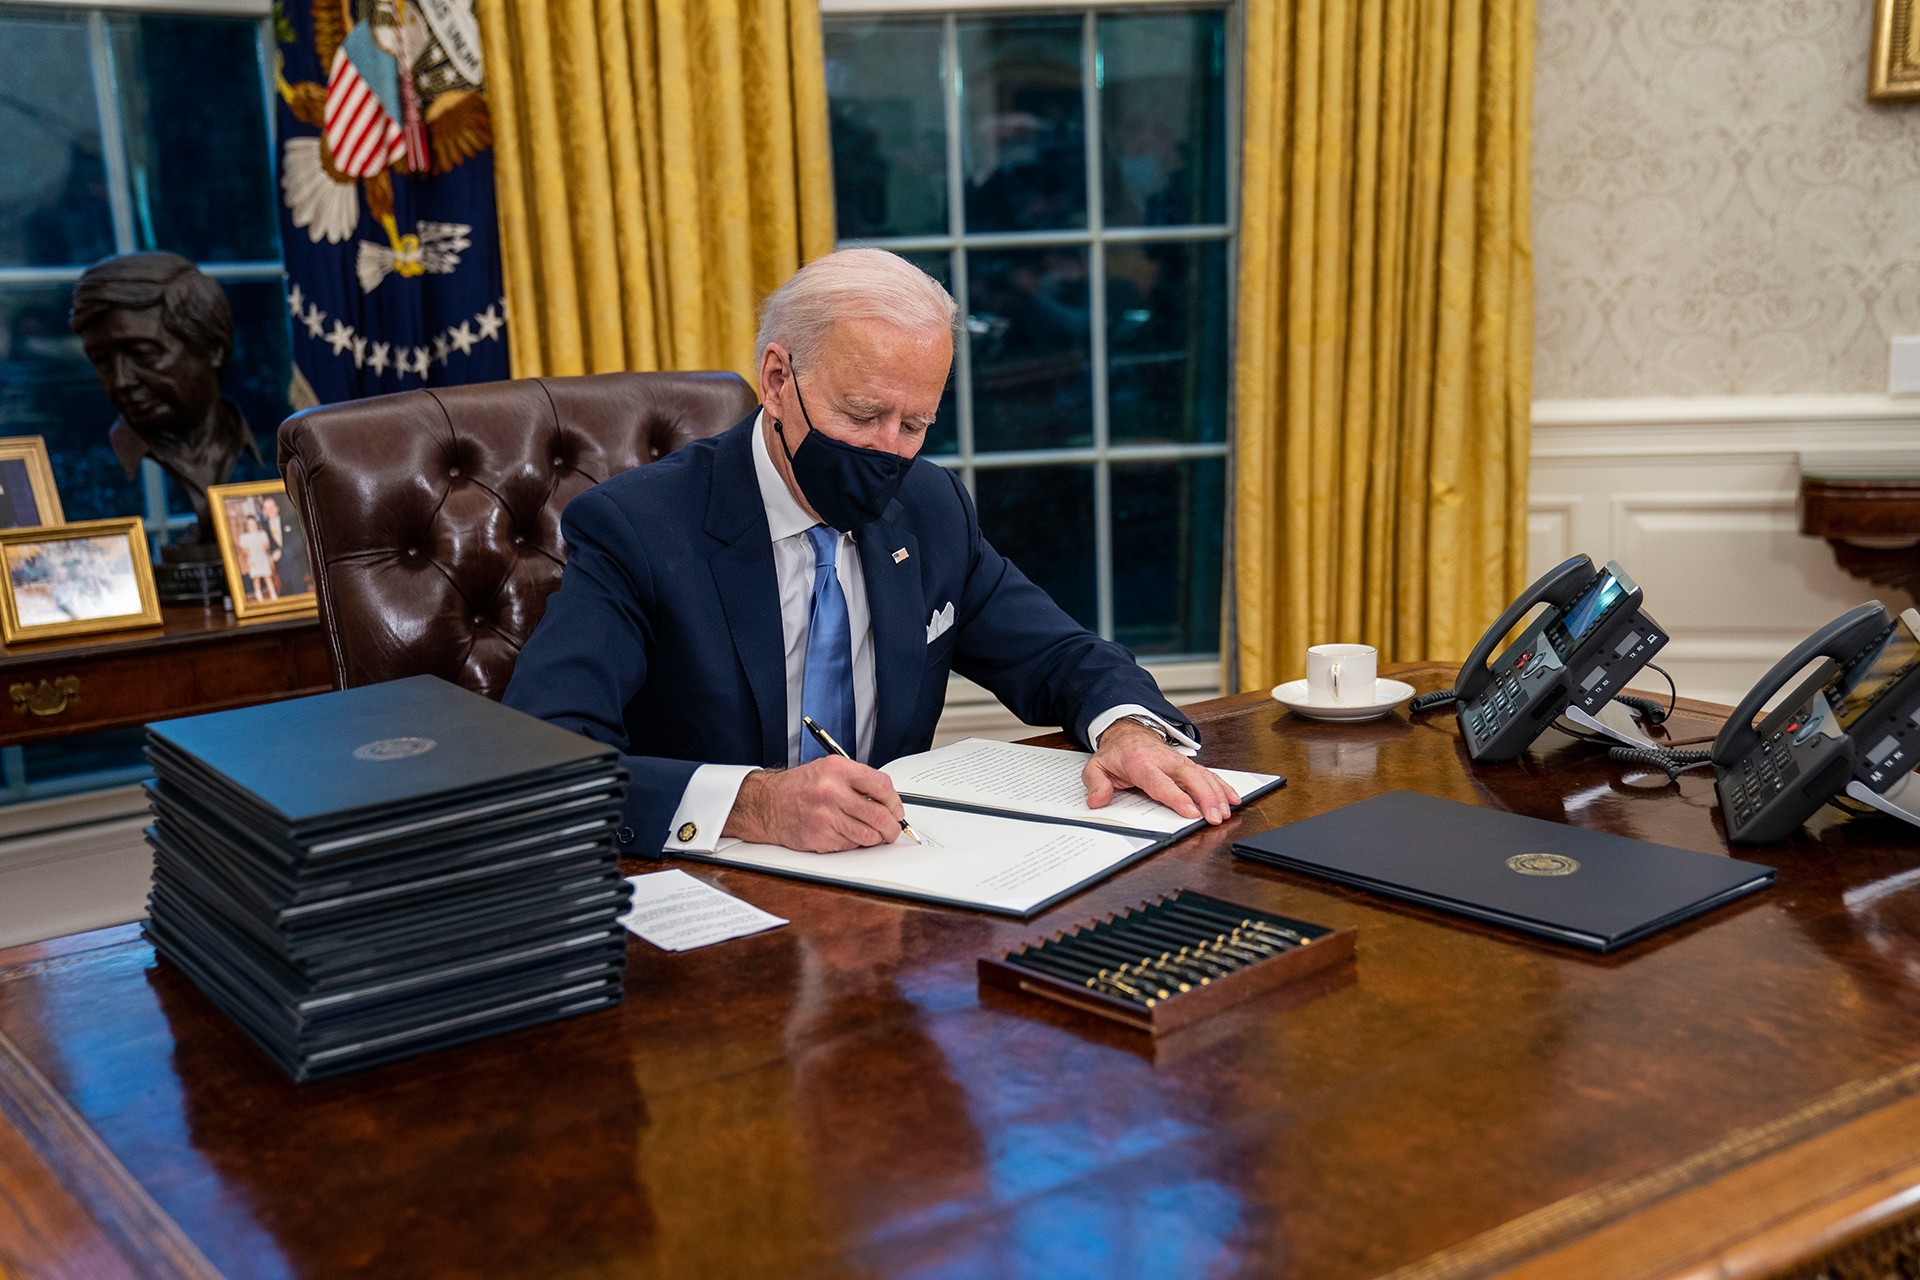 ABD Başkanı Joe Biden, göreve başlama törenlerinin bitmesinin ardından geldiği Beyaz Saray'da Oval Ofis'e girerek Donald Trump döneminde sıkça tartışılan politikaları geri çevirmeye yönelik ilk kararnamelerini imzaladı. (Fotoğraf: EPA/Doug Mills/POOL - AA)